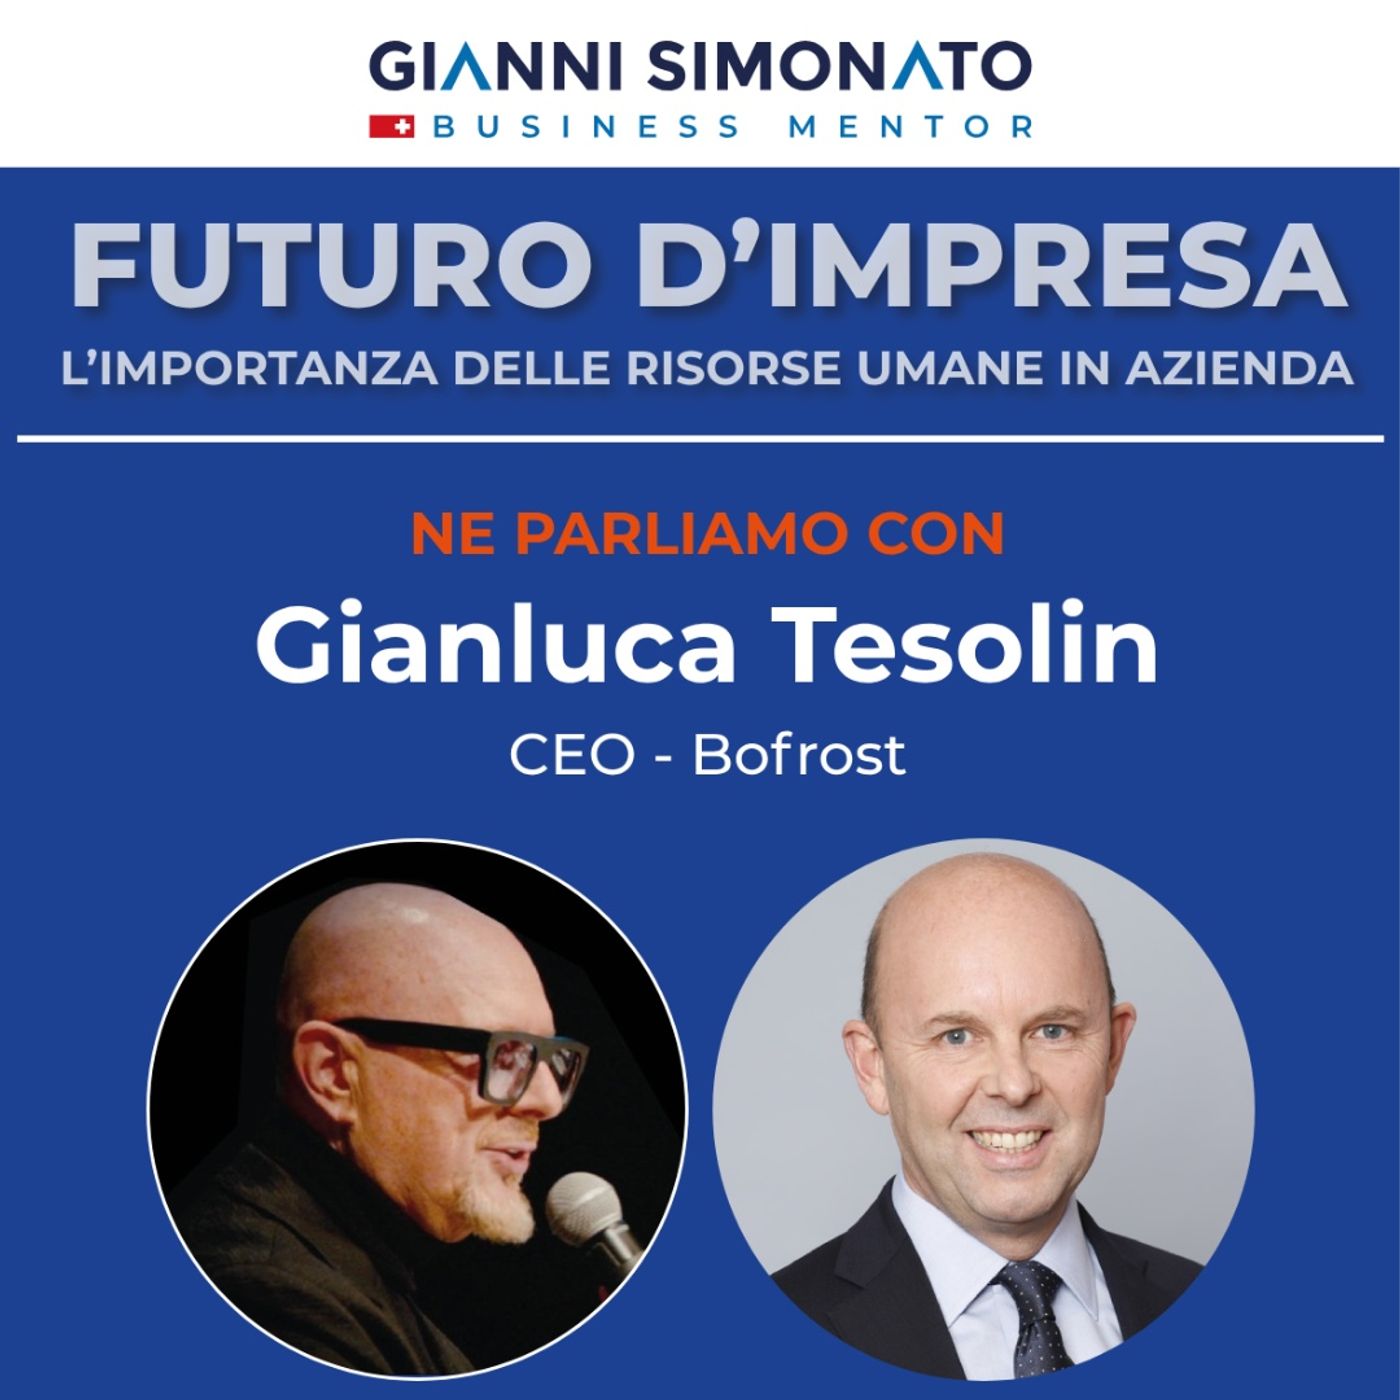 Futuro d'Impresa ne parliamo: Gianluca Tesolin CEO - BoFrost  e Gianni Simonato CEO Mentor